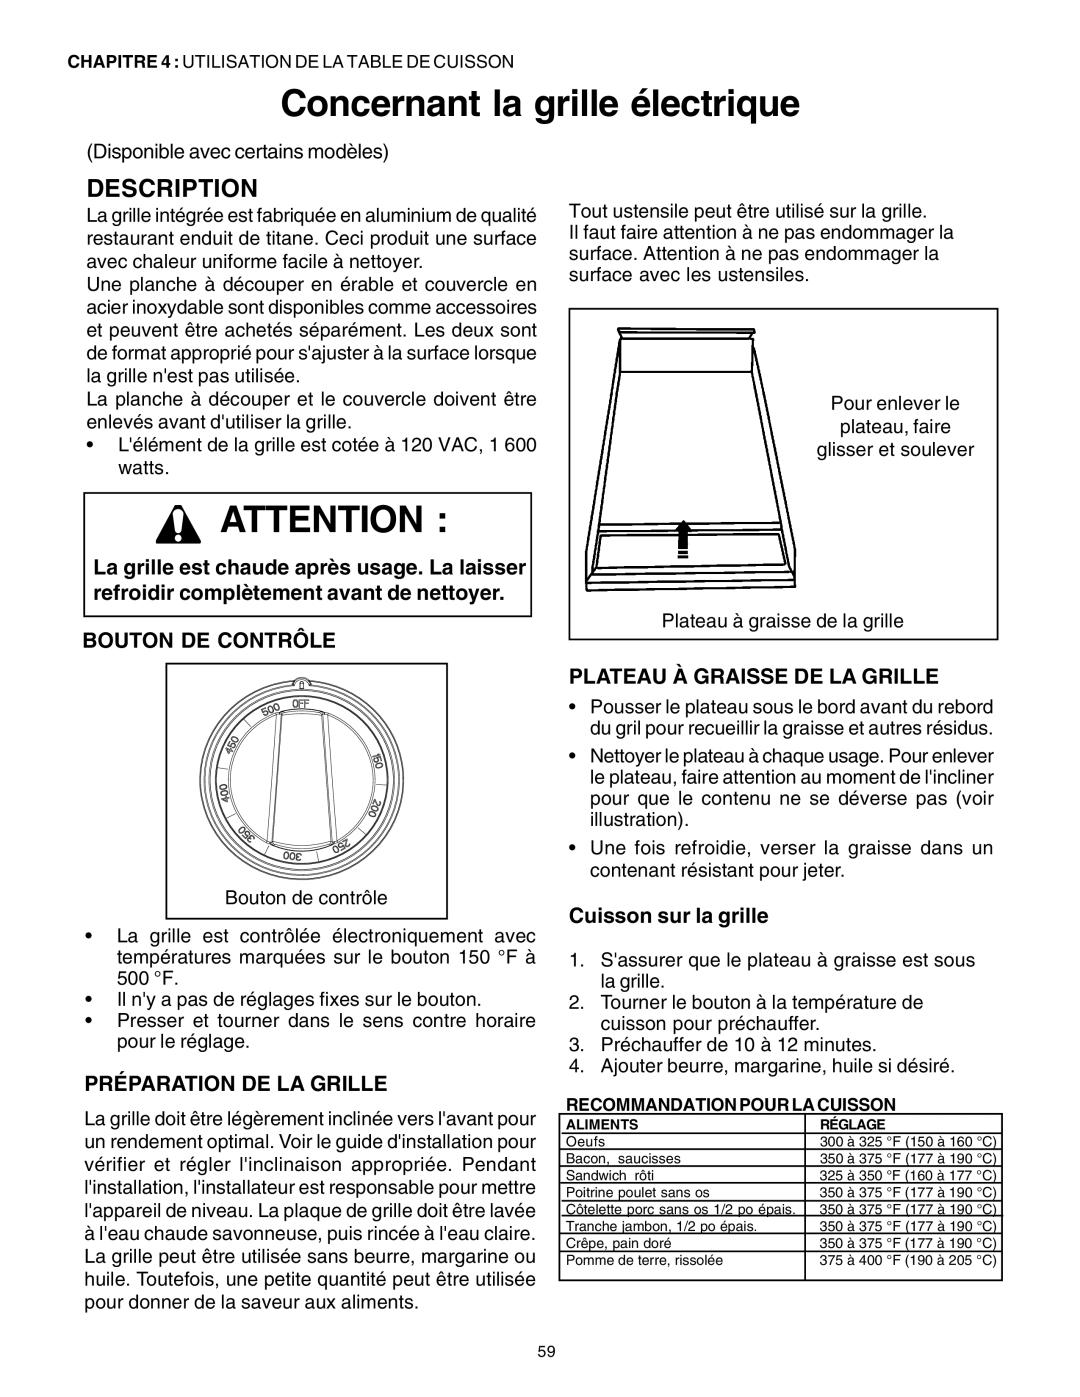 Thermador P30 P36 Concernant la grille électrique, Préparation De La Grille, Plateau À Graisse De La Grille, Description 